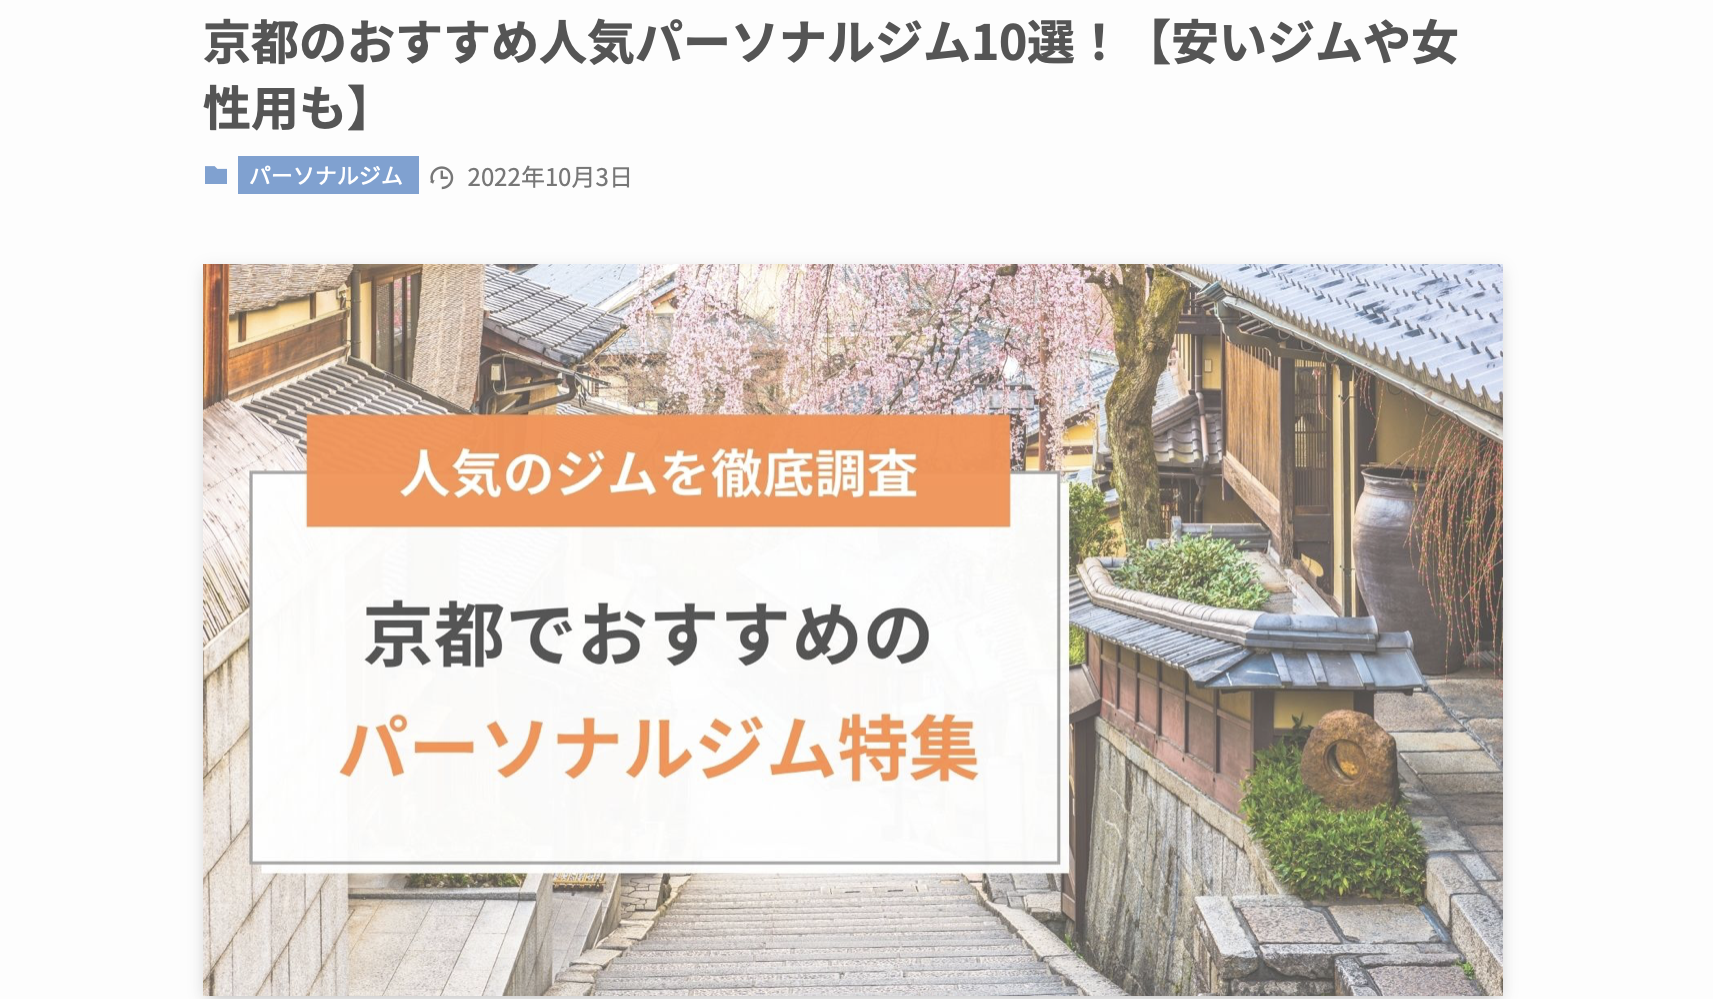 BEYOND 京都四条店が「デイリースポーツ フィットネス情報」に  「京都でおすすめのパーソナルジム」として紹介されました